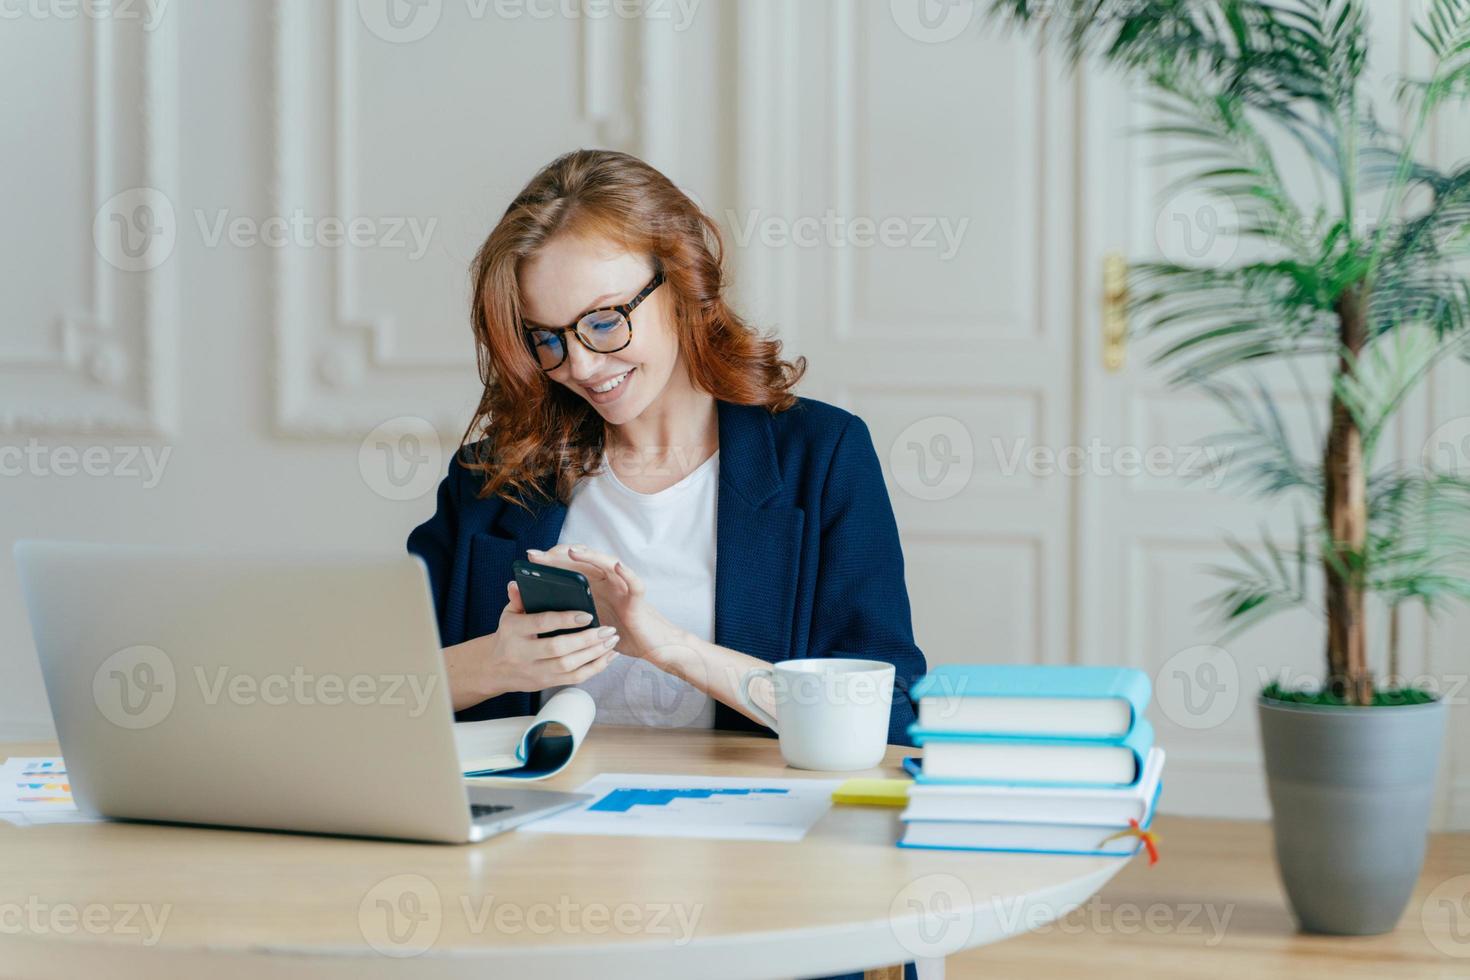 teknik och kommunikationskoncept. rödhårig ung kvinna kollar e-postrutan på modern mobiltelefon, har ett trevligt leende, studerar dokument, äger ett stort företag, använder bärbar dator för arbete foto